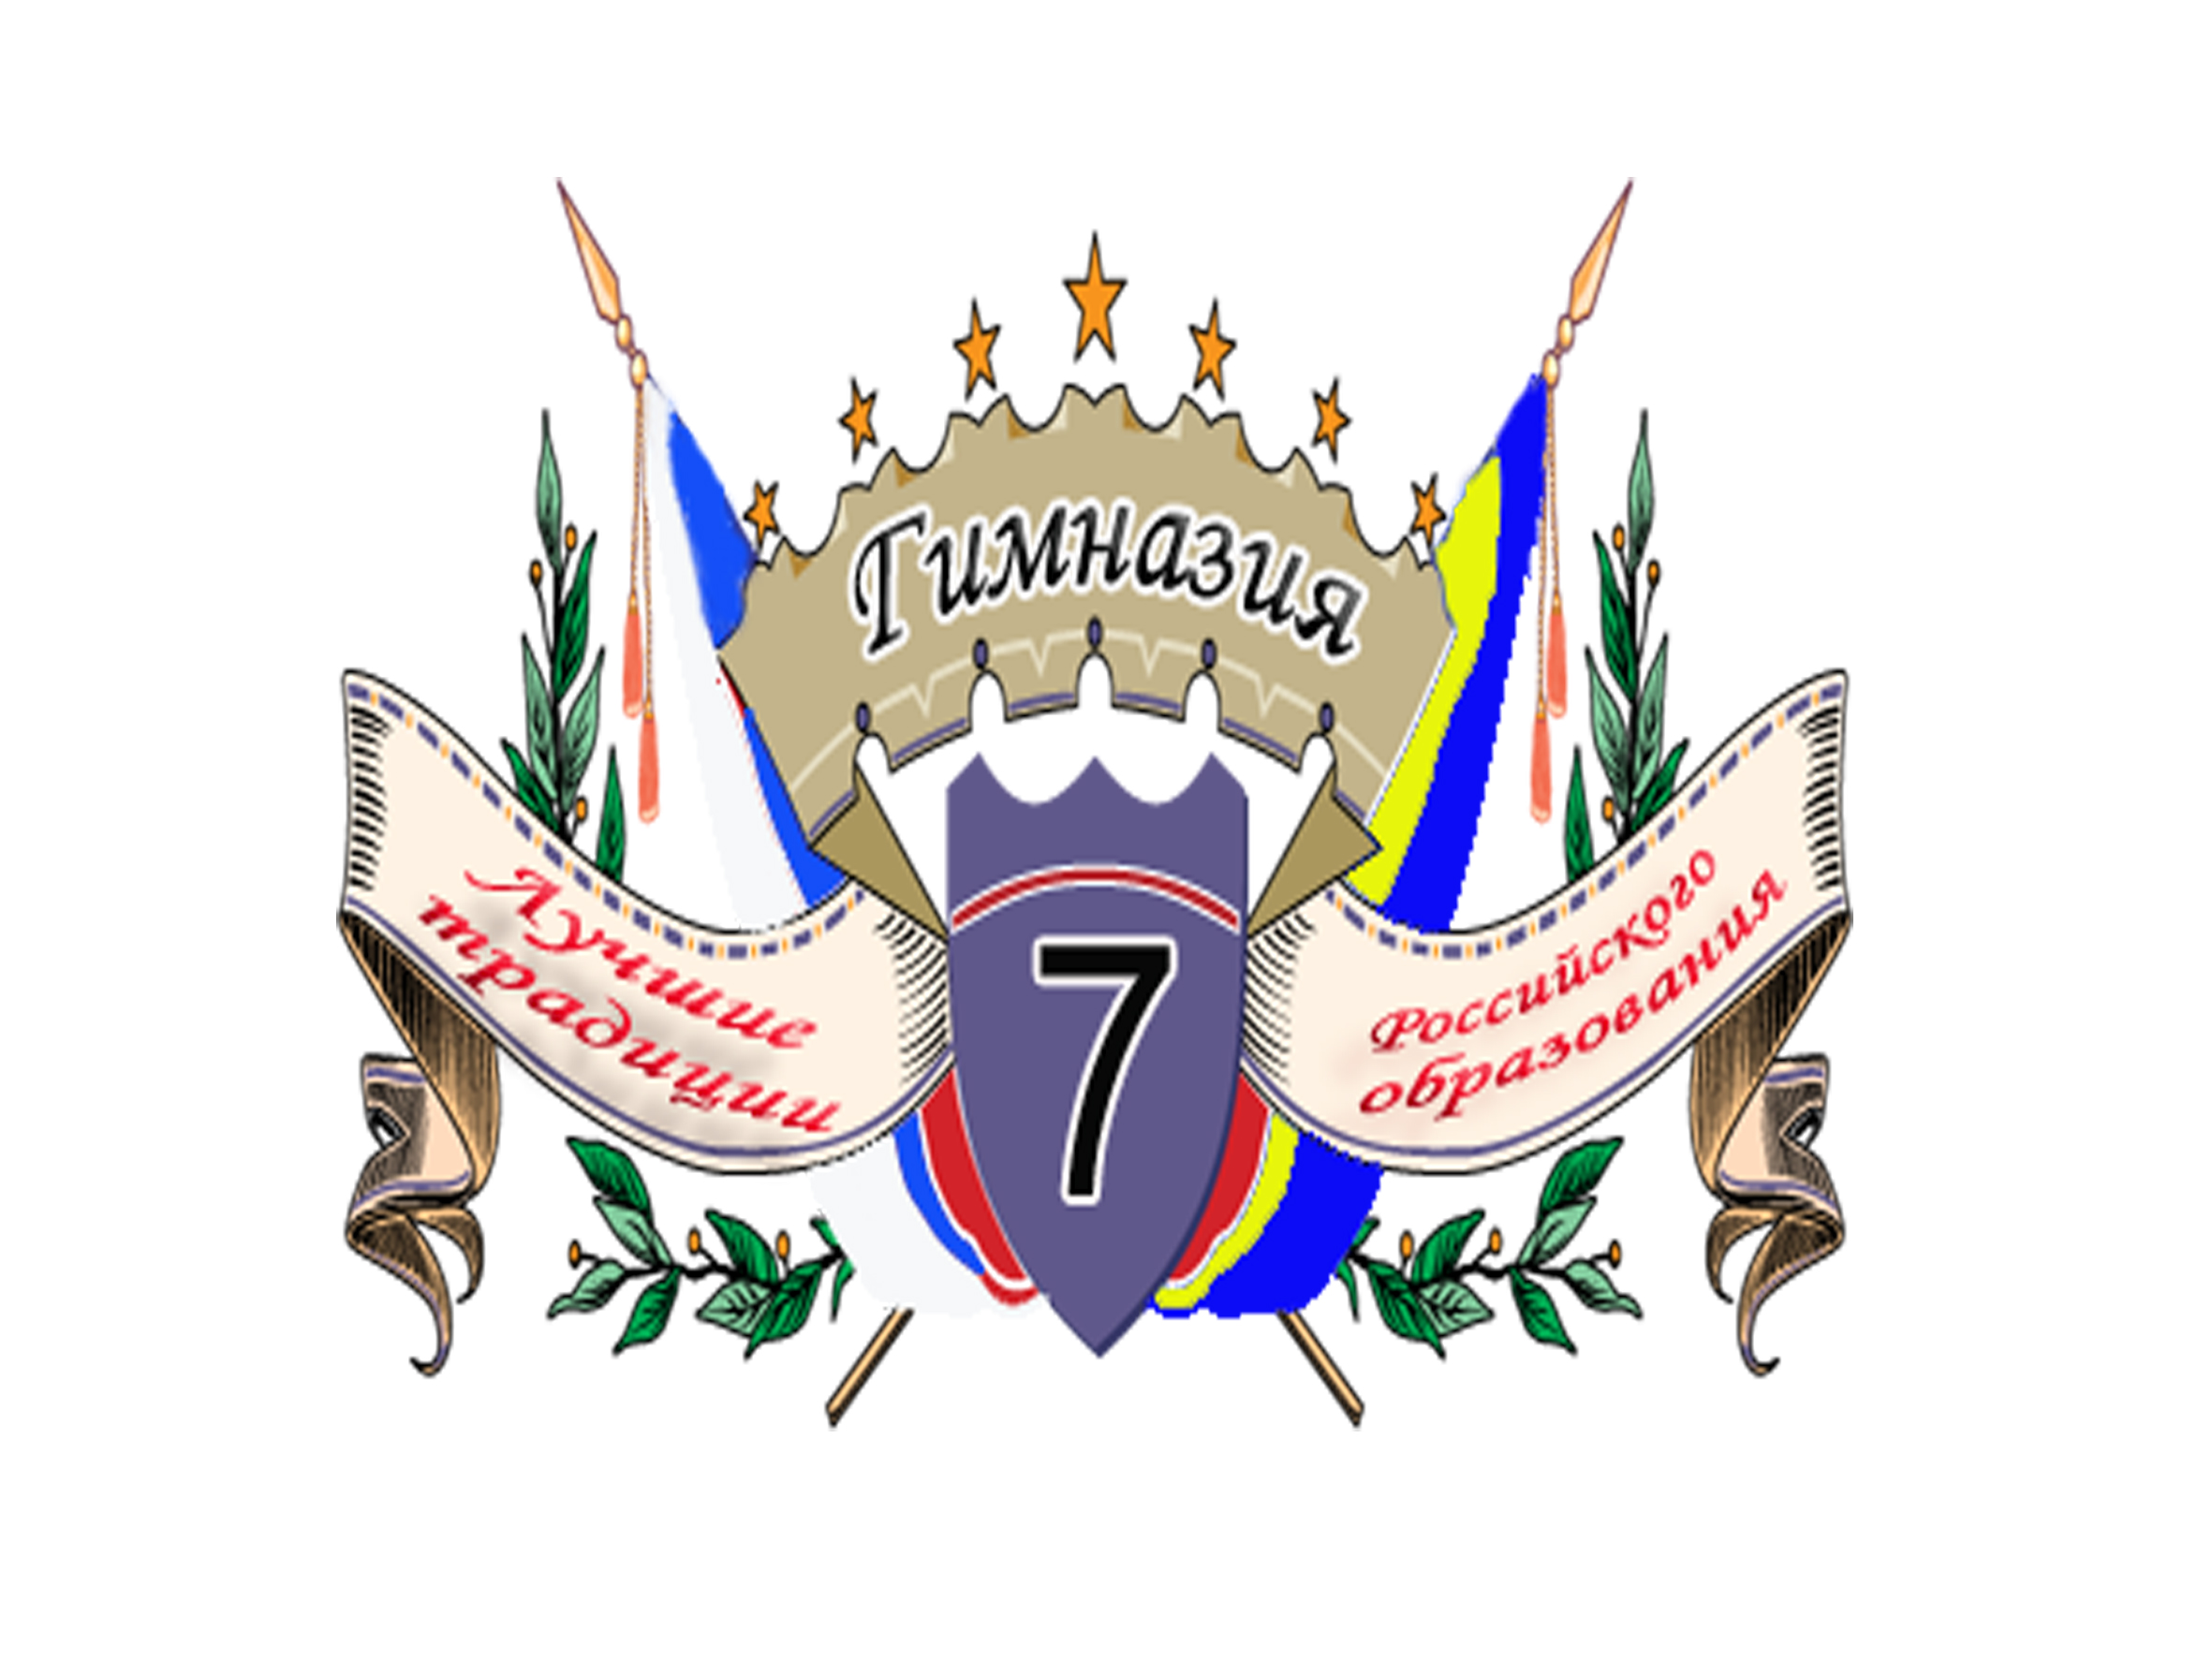 Логотип Гимназия 7 Батайск.jpg